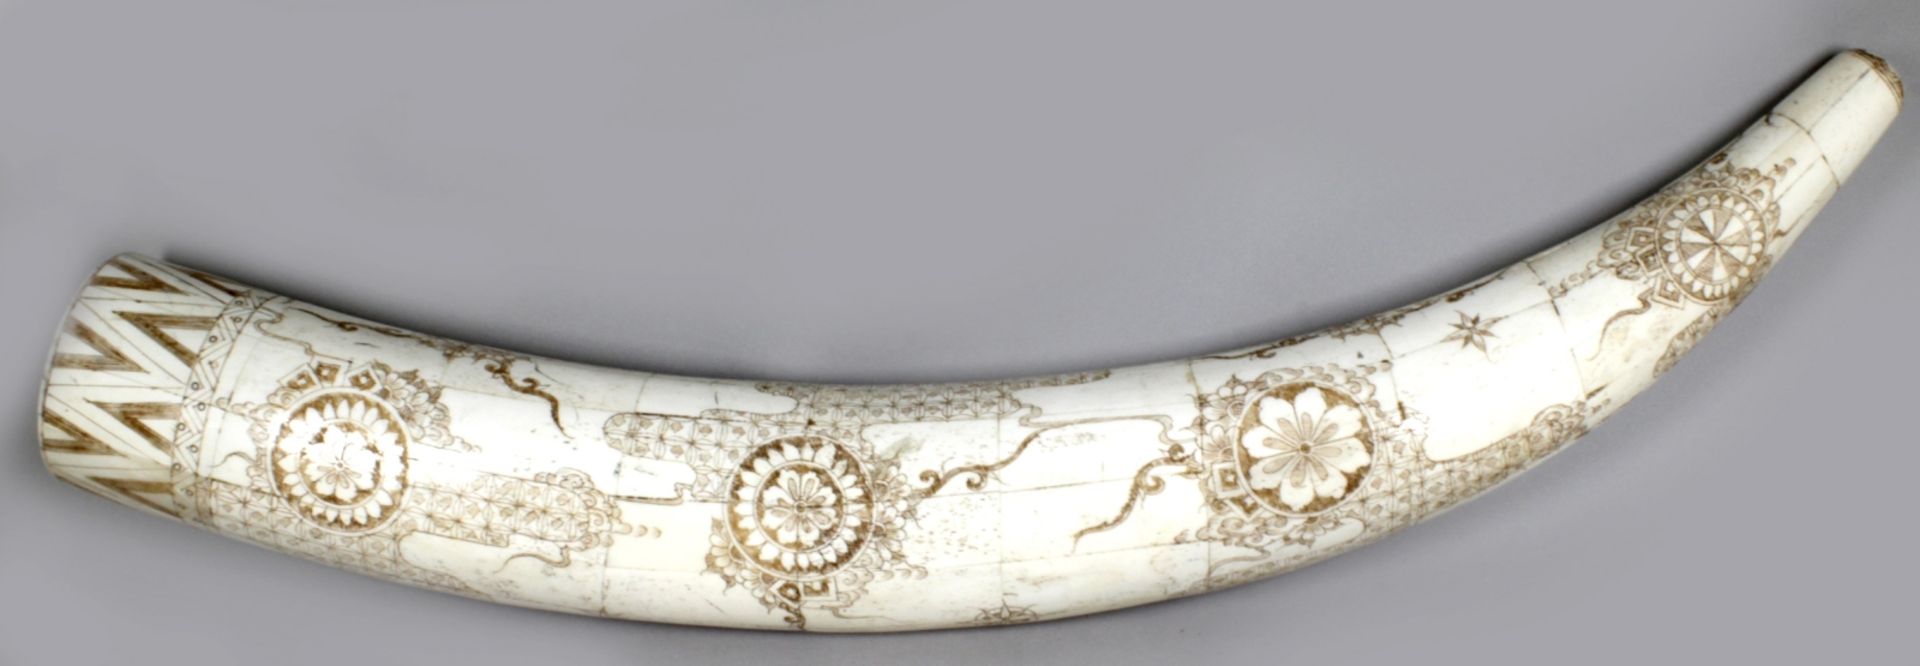 Bein-Schnitzerei, China, 20. Jh., große, gebogte Zahnform, gefertigt aus zusammengesetztenPlatt - Bild 2 aus 4